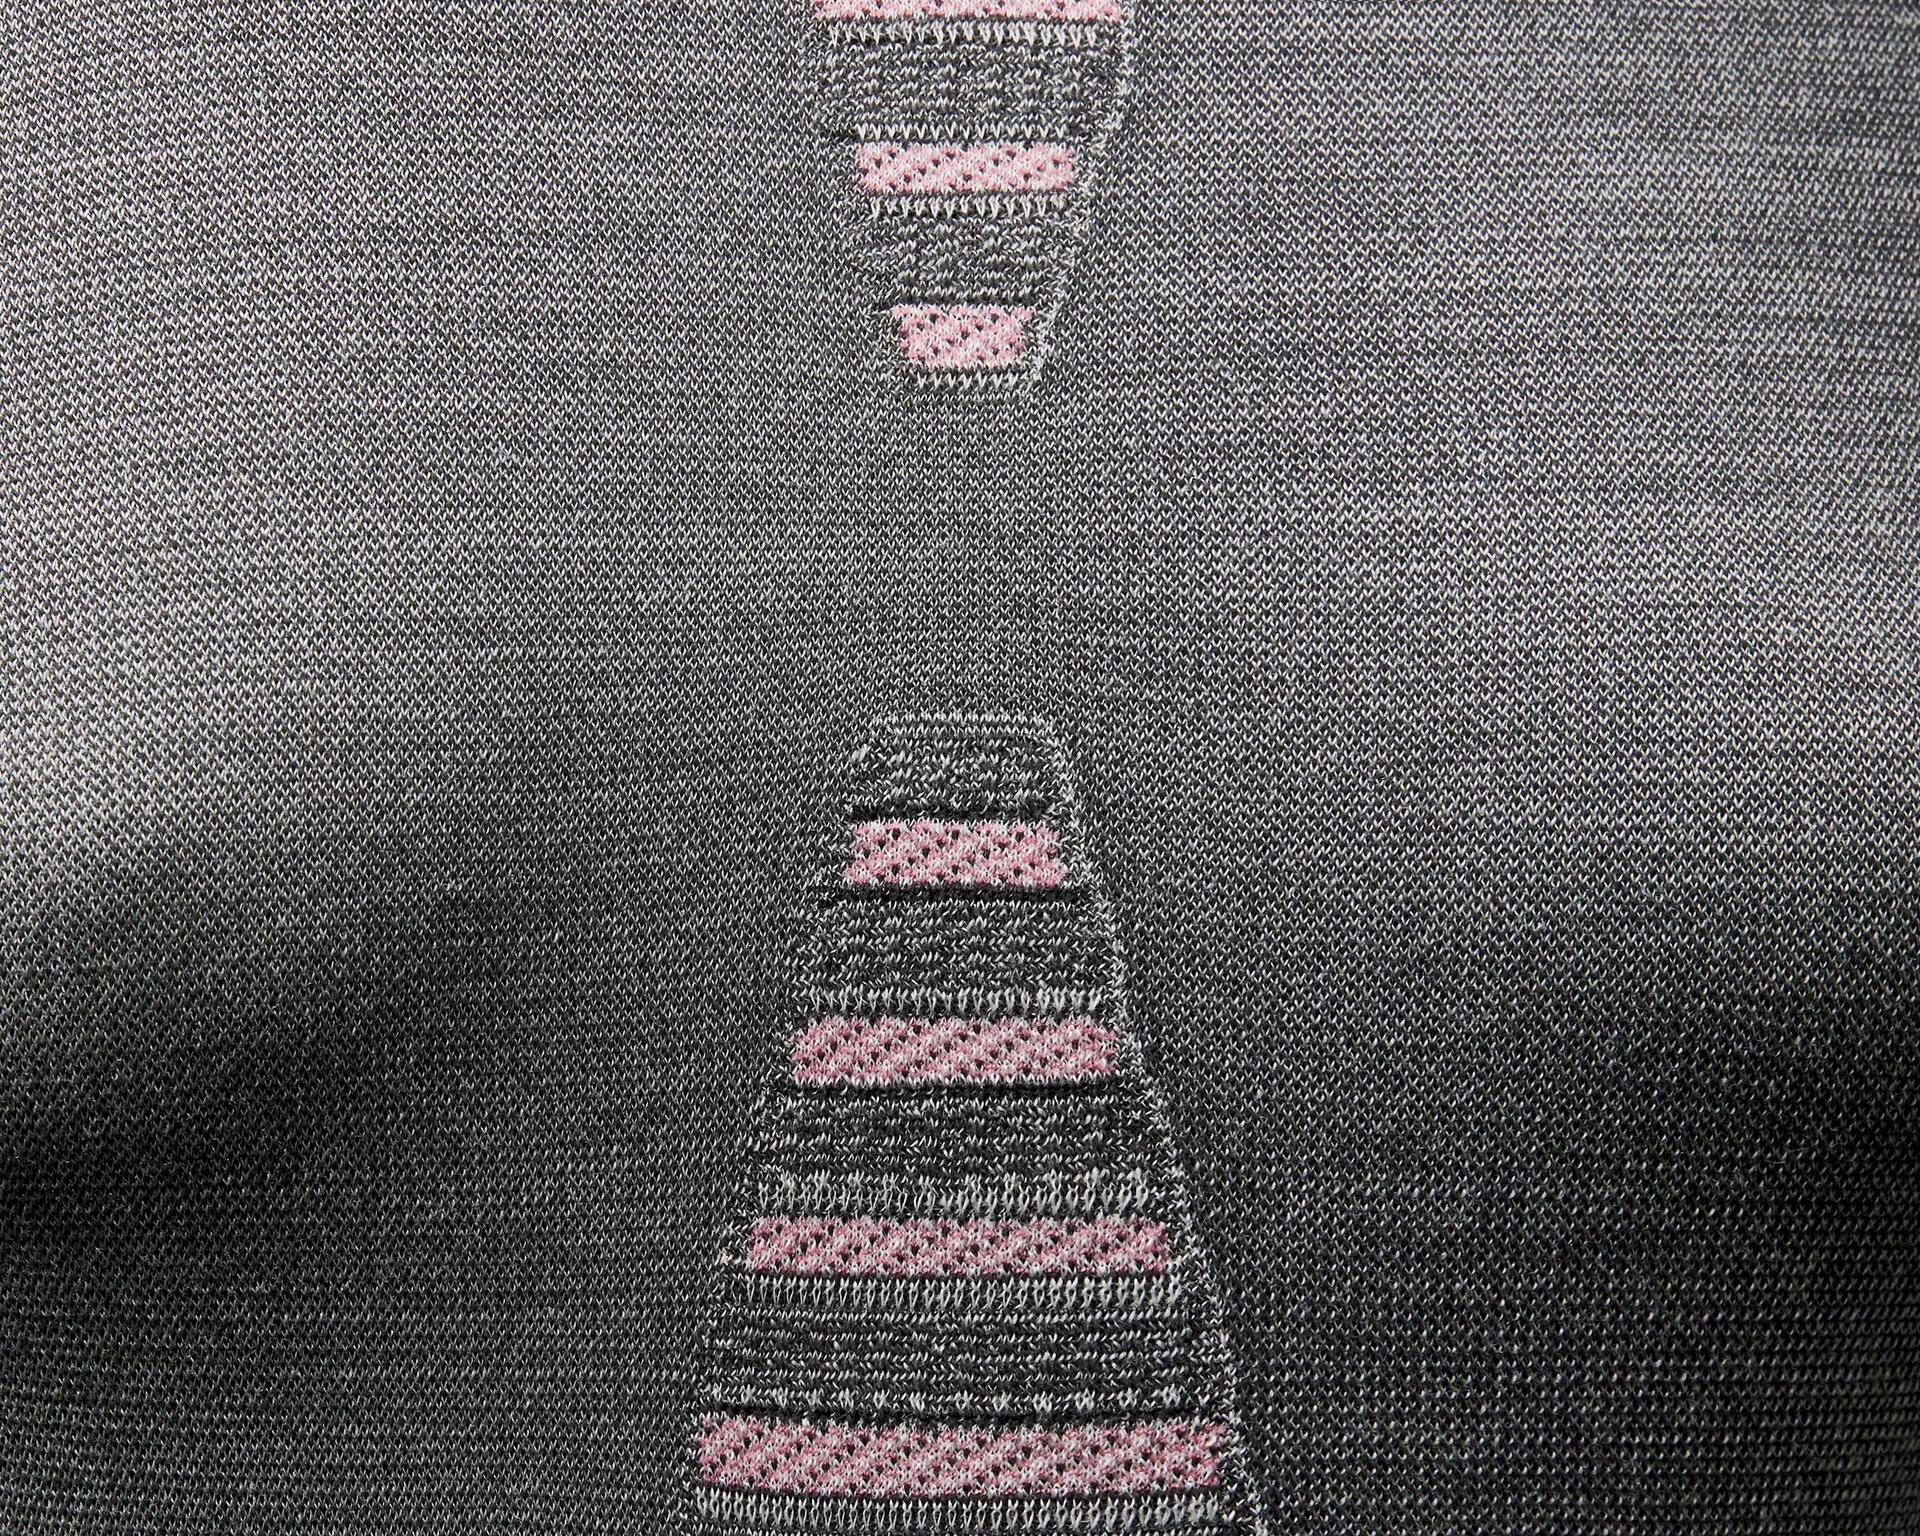 Women’s Merino Wool Base Layer Top - BL 900 Pink